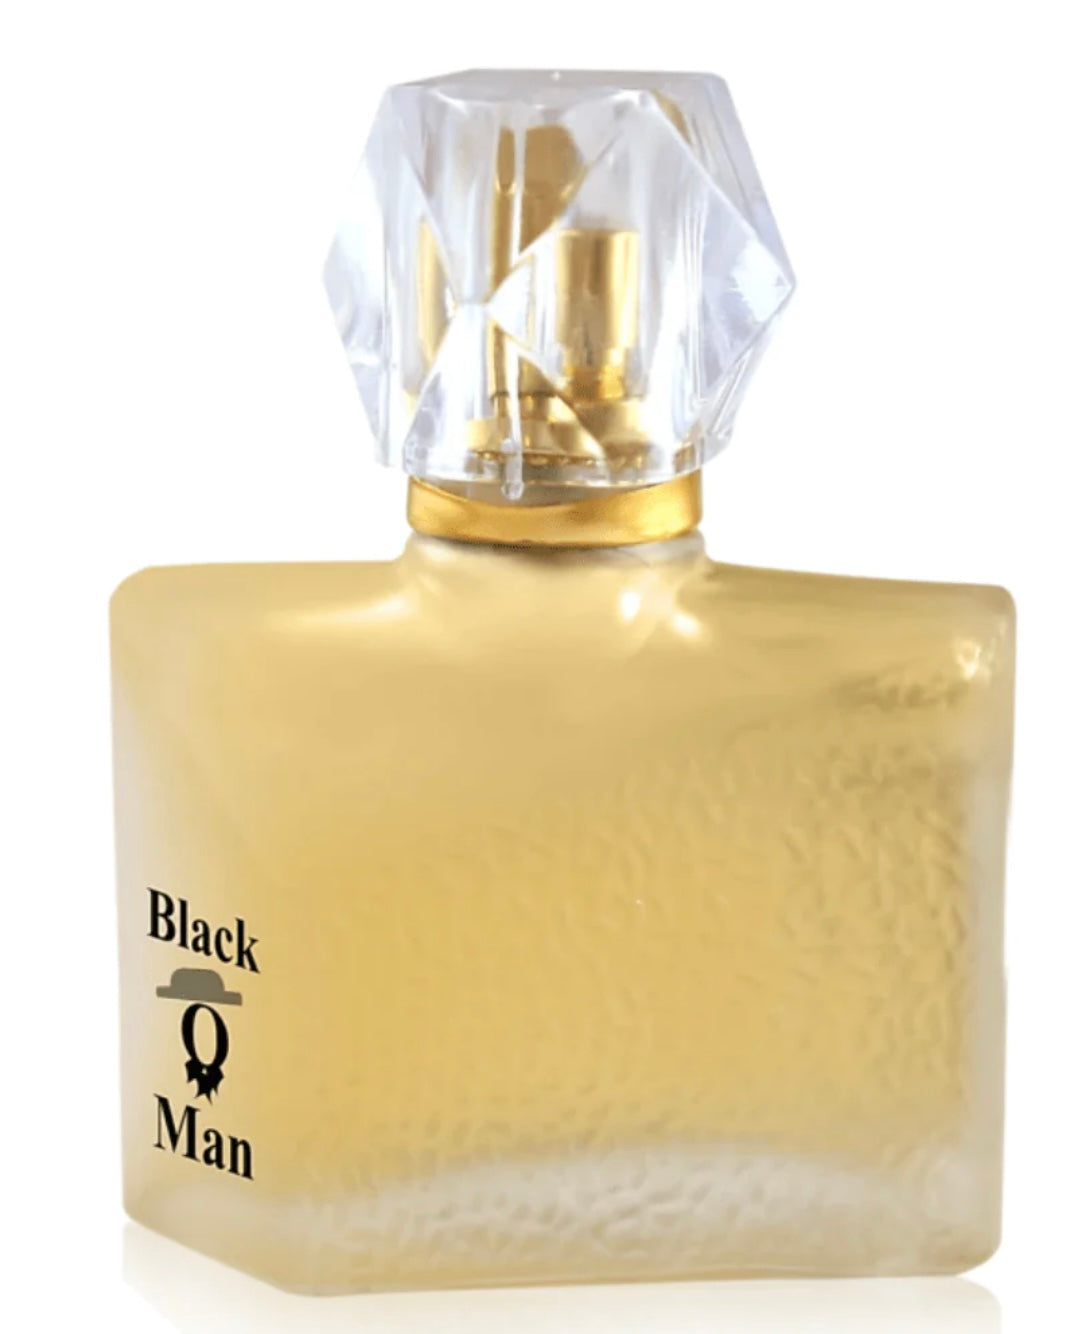 Black man EAU DE PAREFUM FOR MEN BY NABEEL